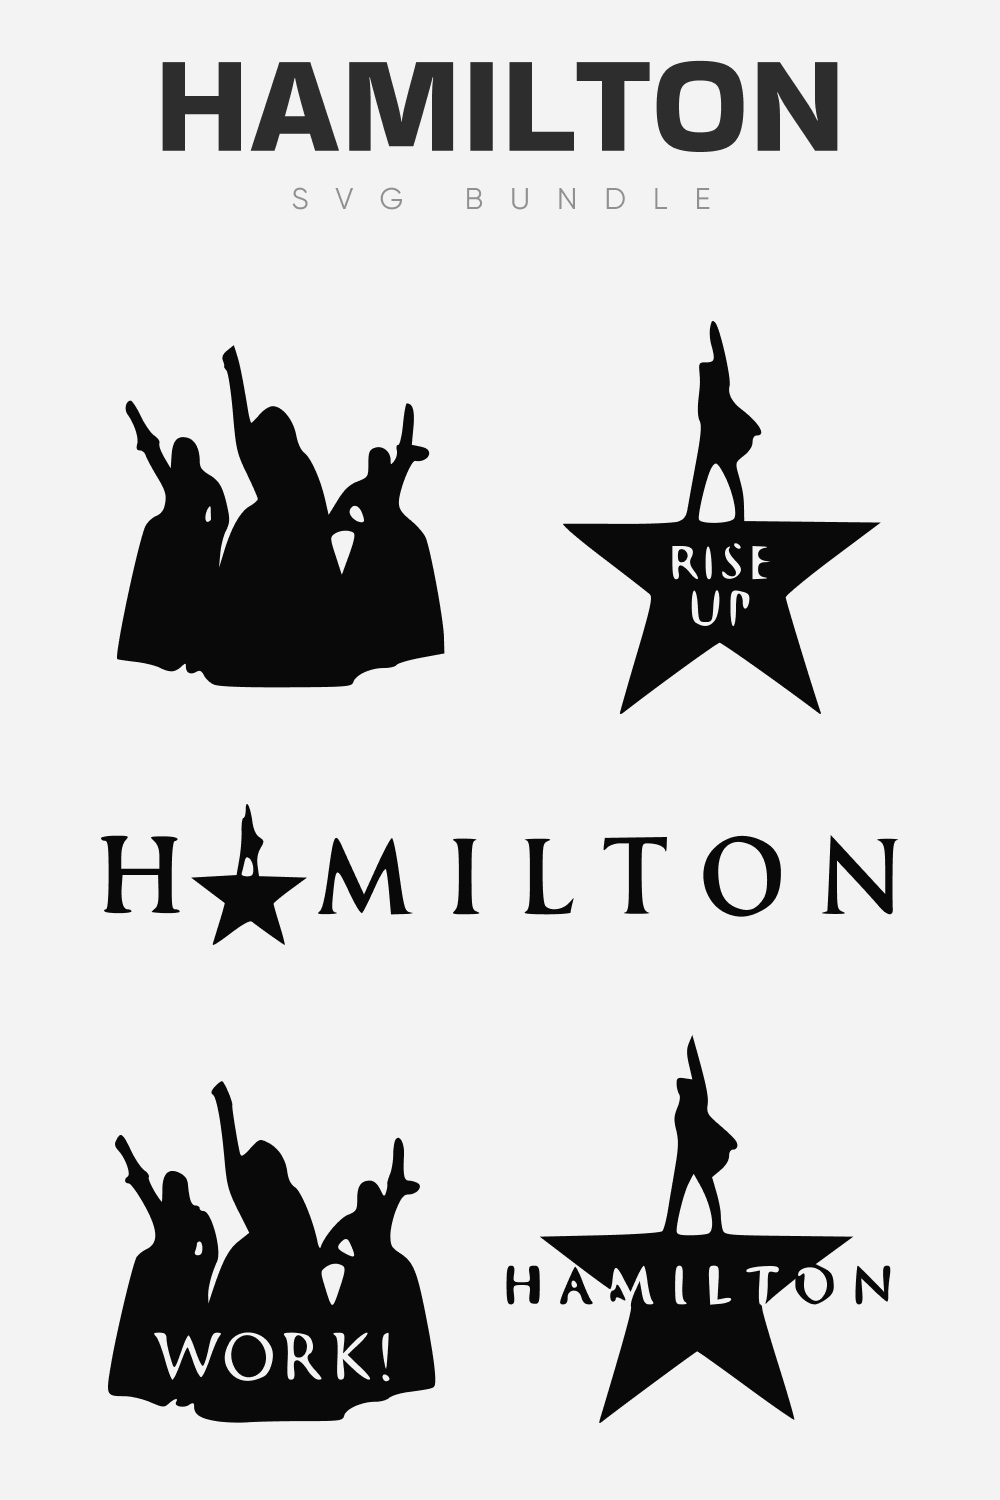 Hamilton SVG Bundle, Vertical Image.